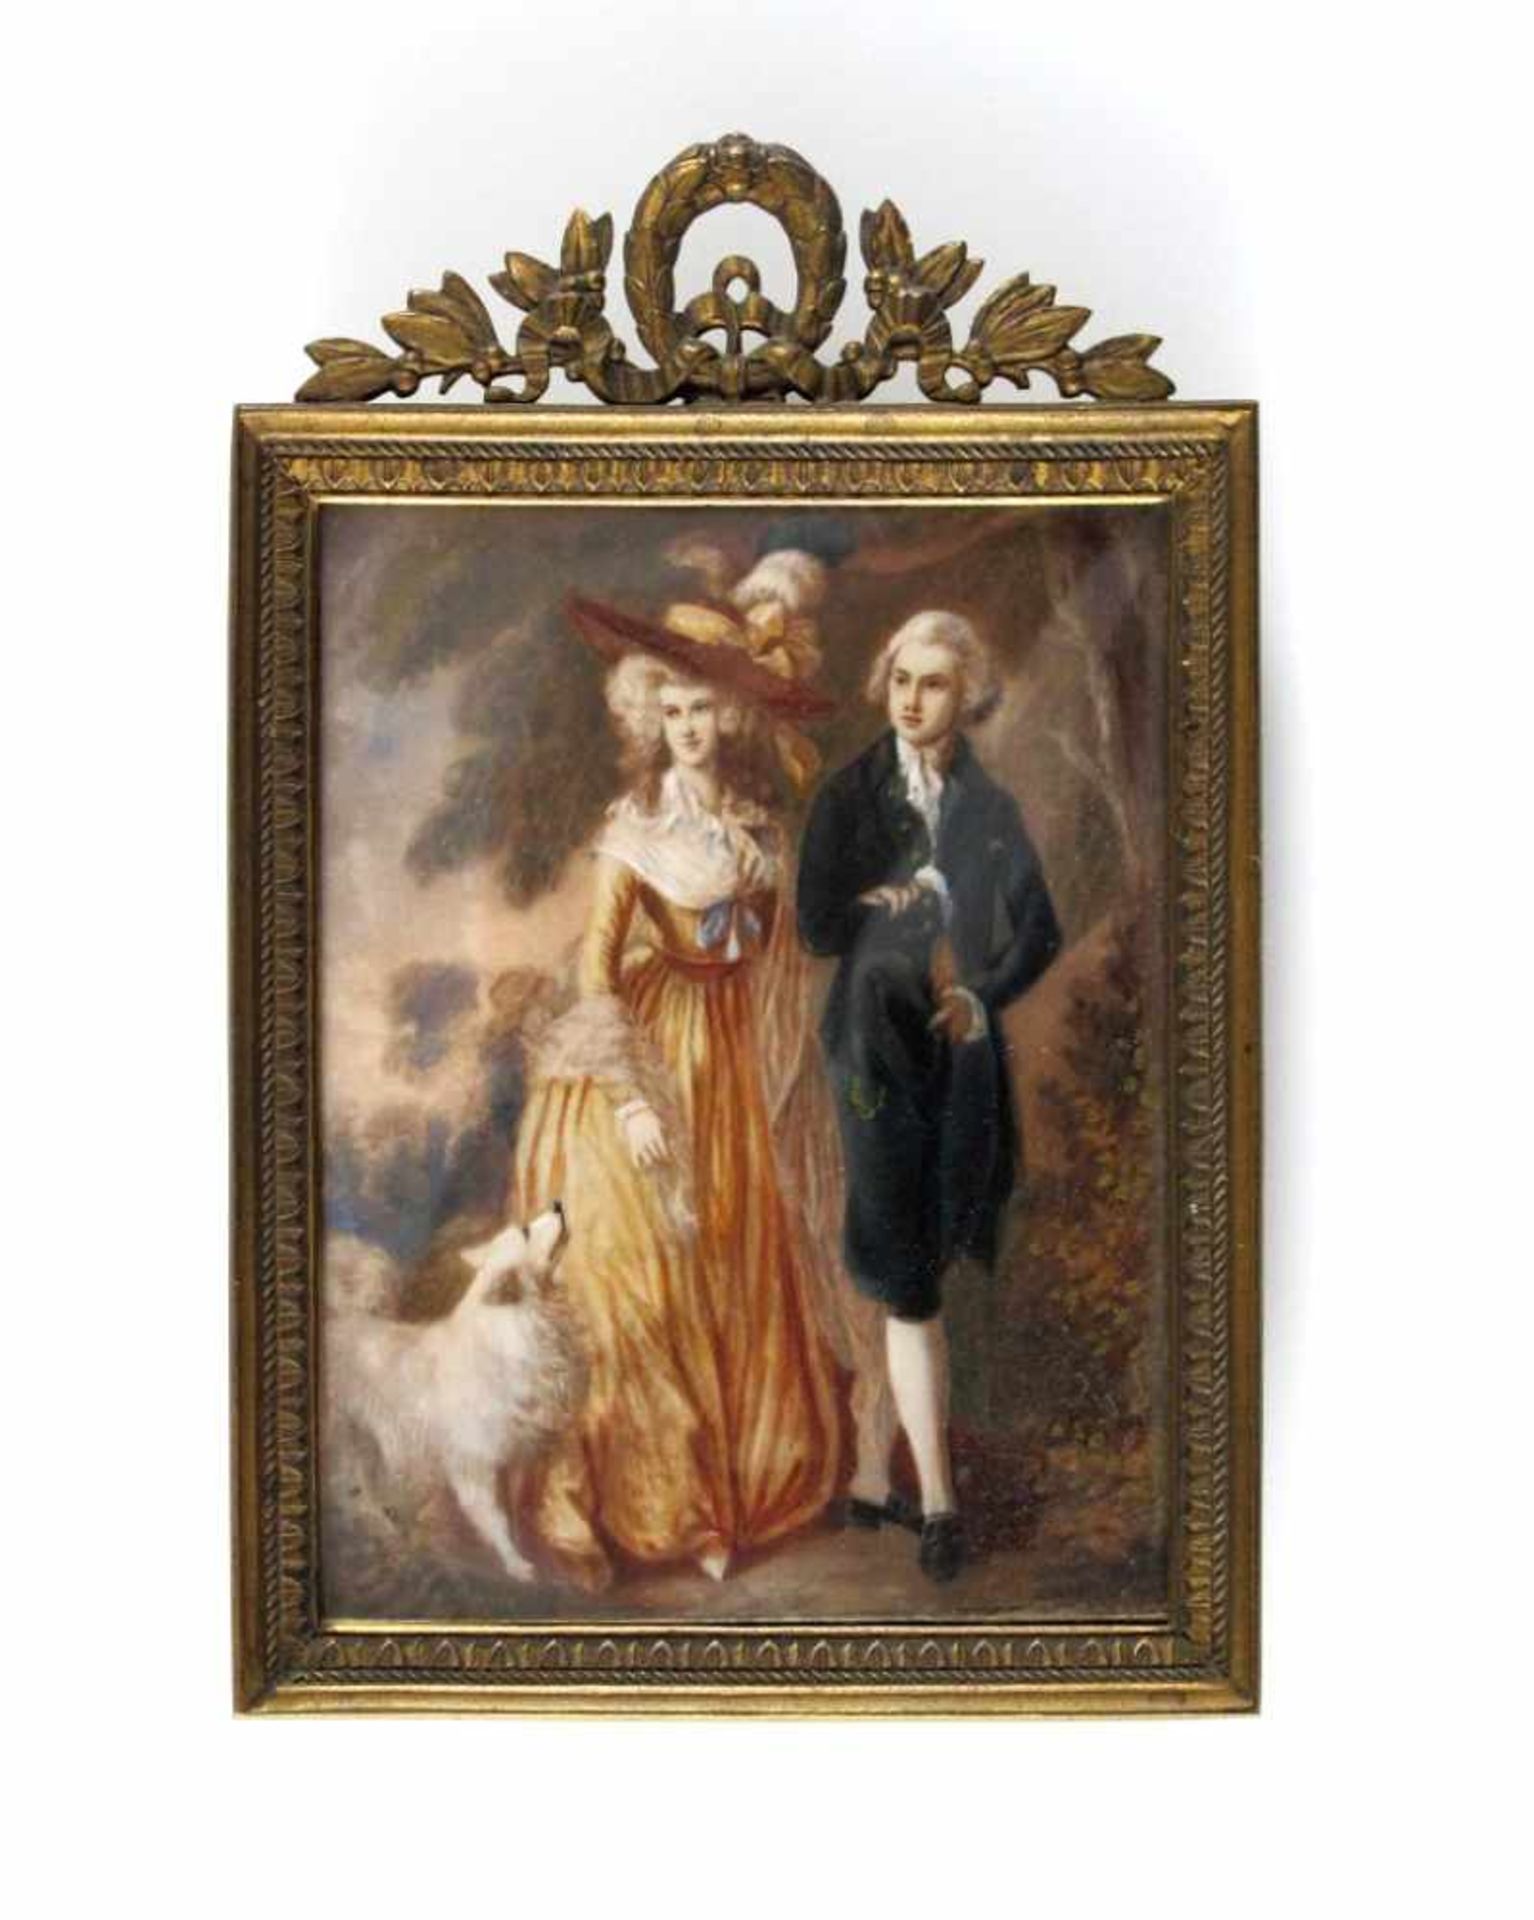 Mr. und Mrs. William Hallett, nach Thomas Gainsborough. Auf Elfenbein. 19. Jh. 8 x 6,2 cm. R